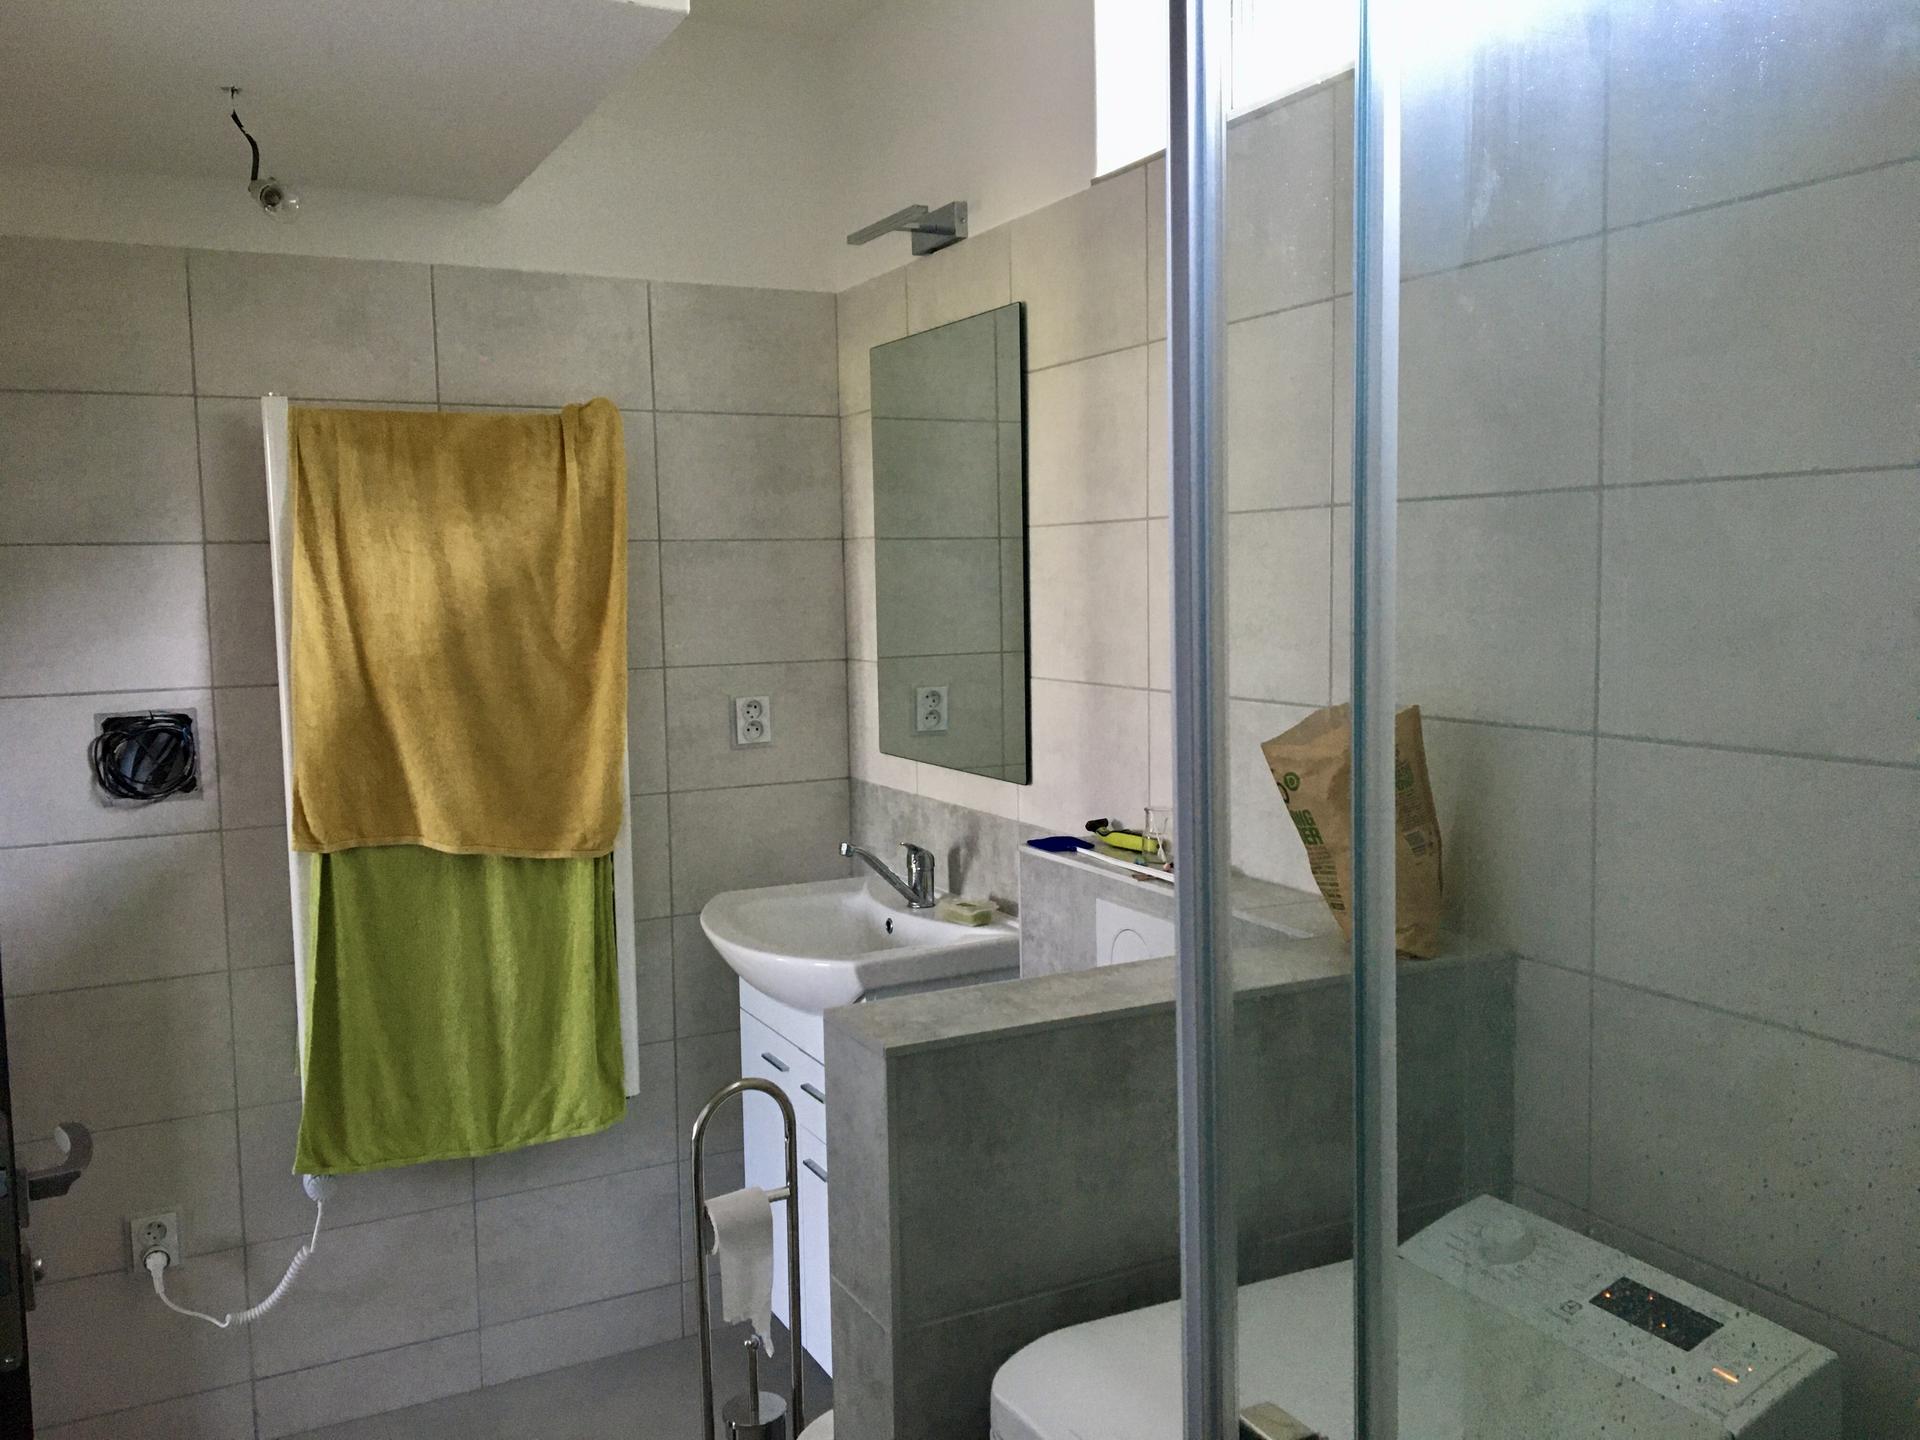 Tohle bude jednou náš dům (stále to vypadá, že pasivní) - Druhá koupelna - pohled ze sprchového koutu ke dveřím a topnému žebříku (neboli sušáku na ručníky, topení je v podlaze)